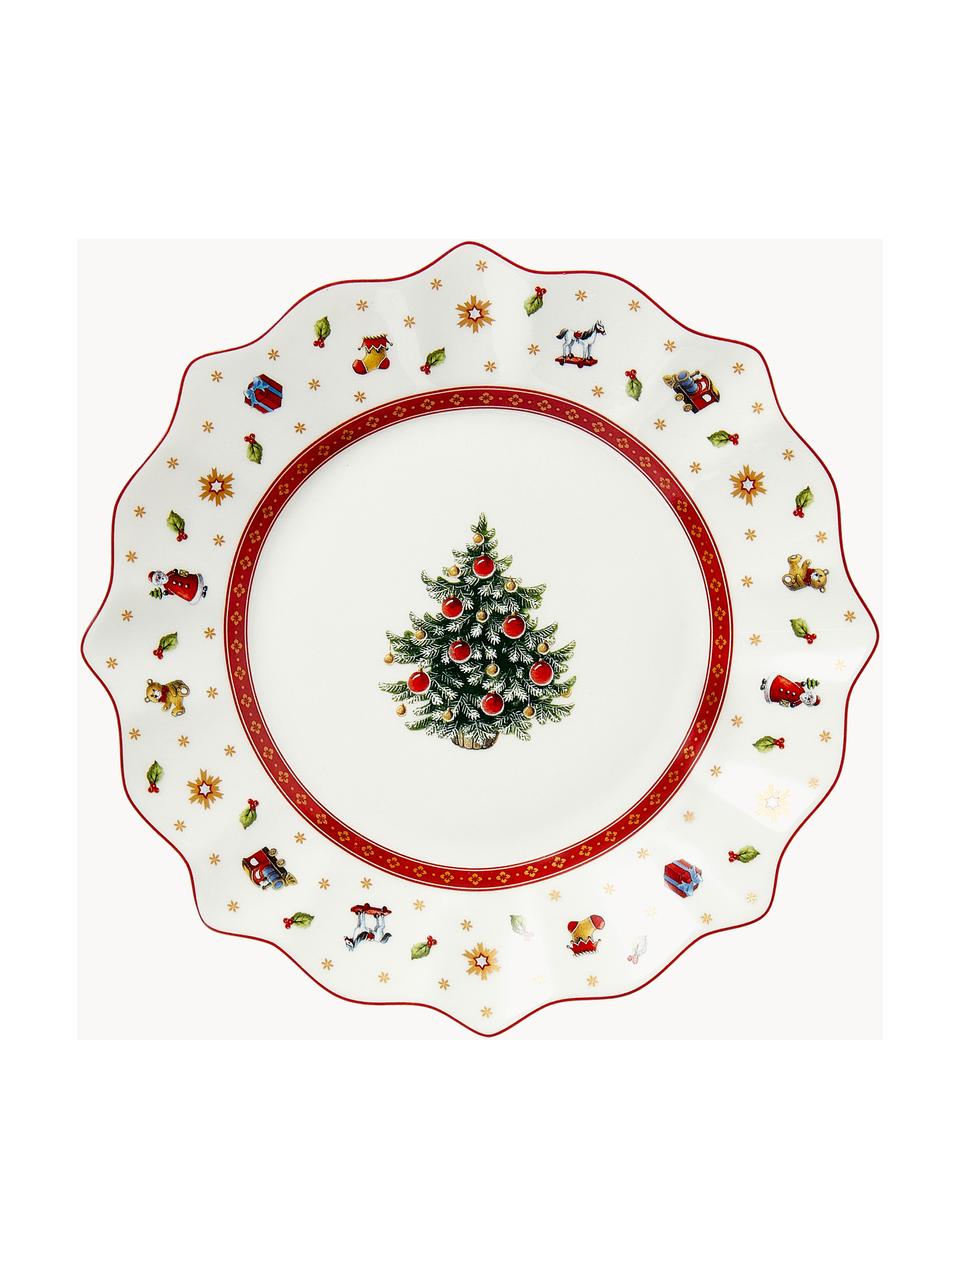 Platos postre de porcelana Delight, 2 uds., Porcelana Premium, Rojo y blanco estampado, Ø 24 cm